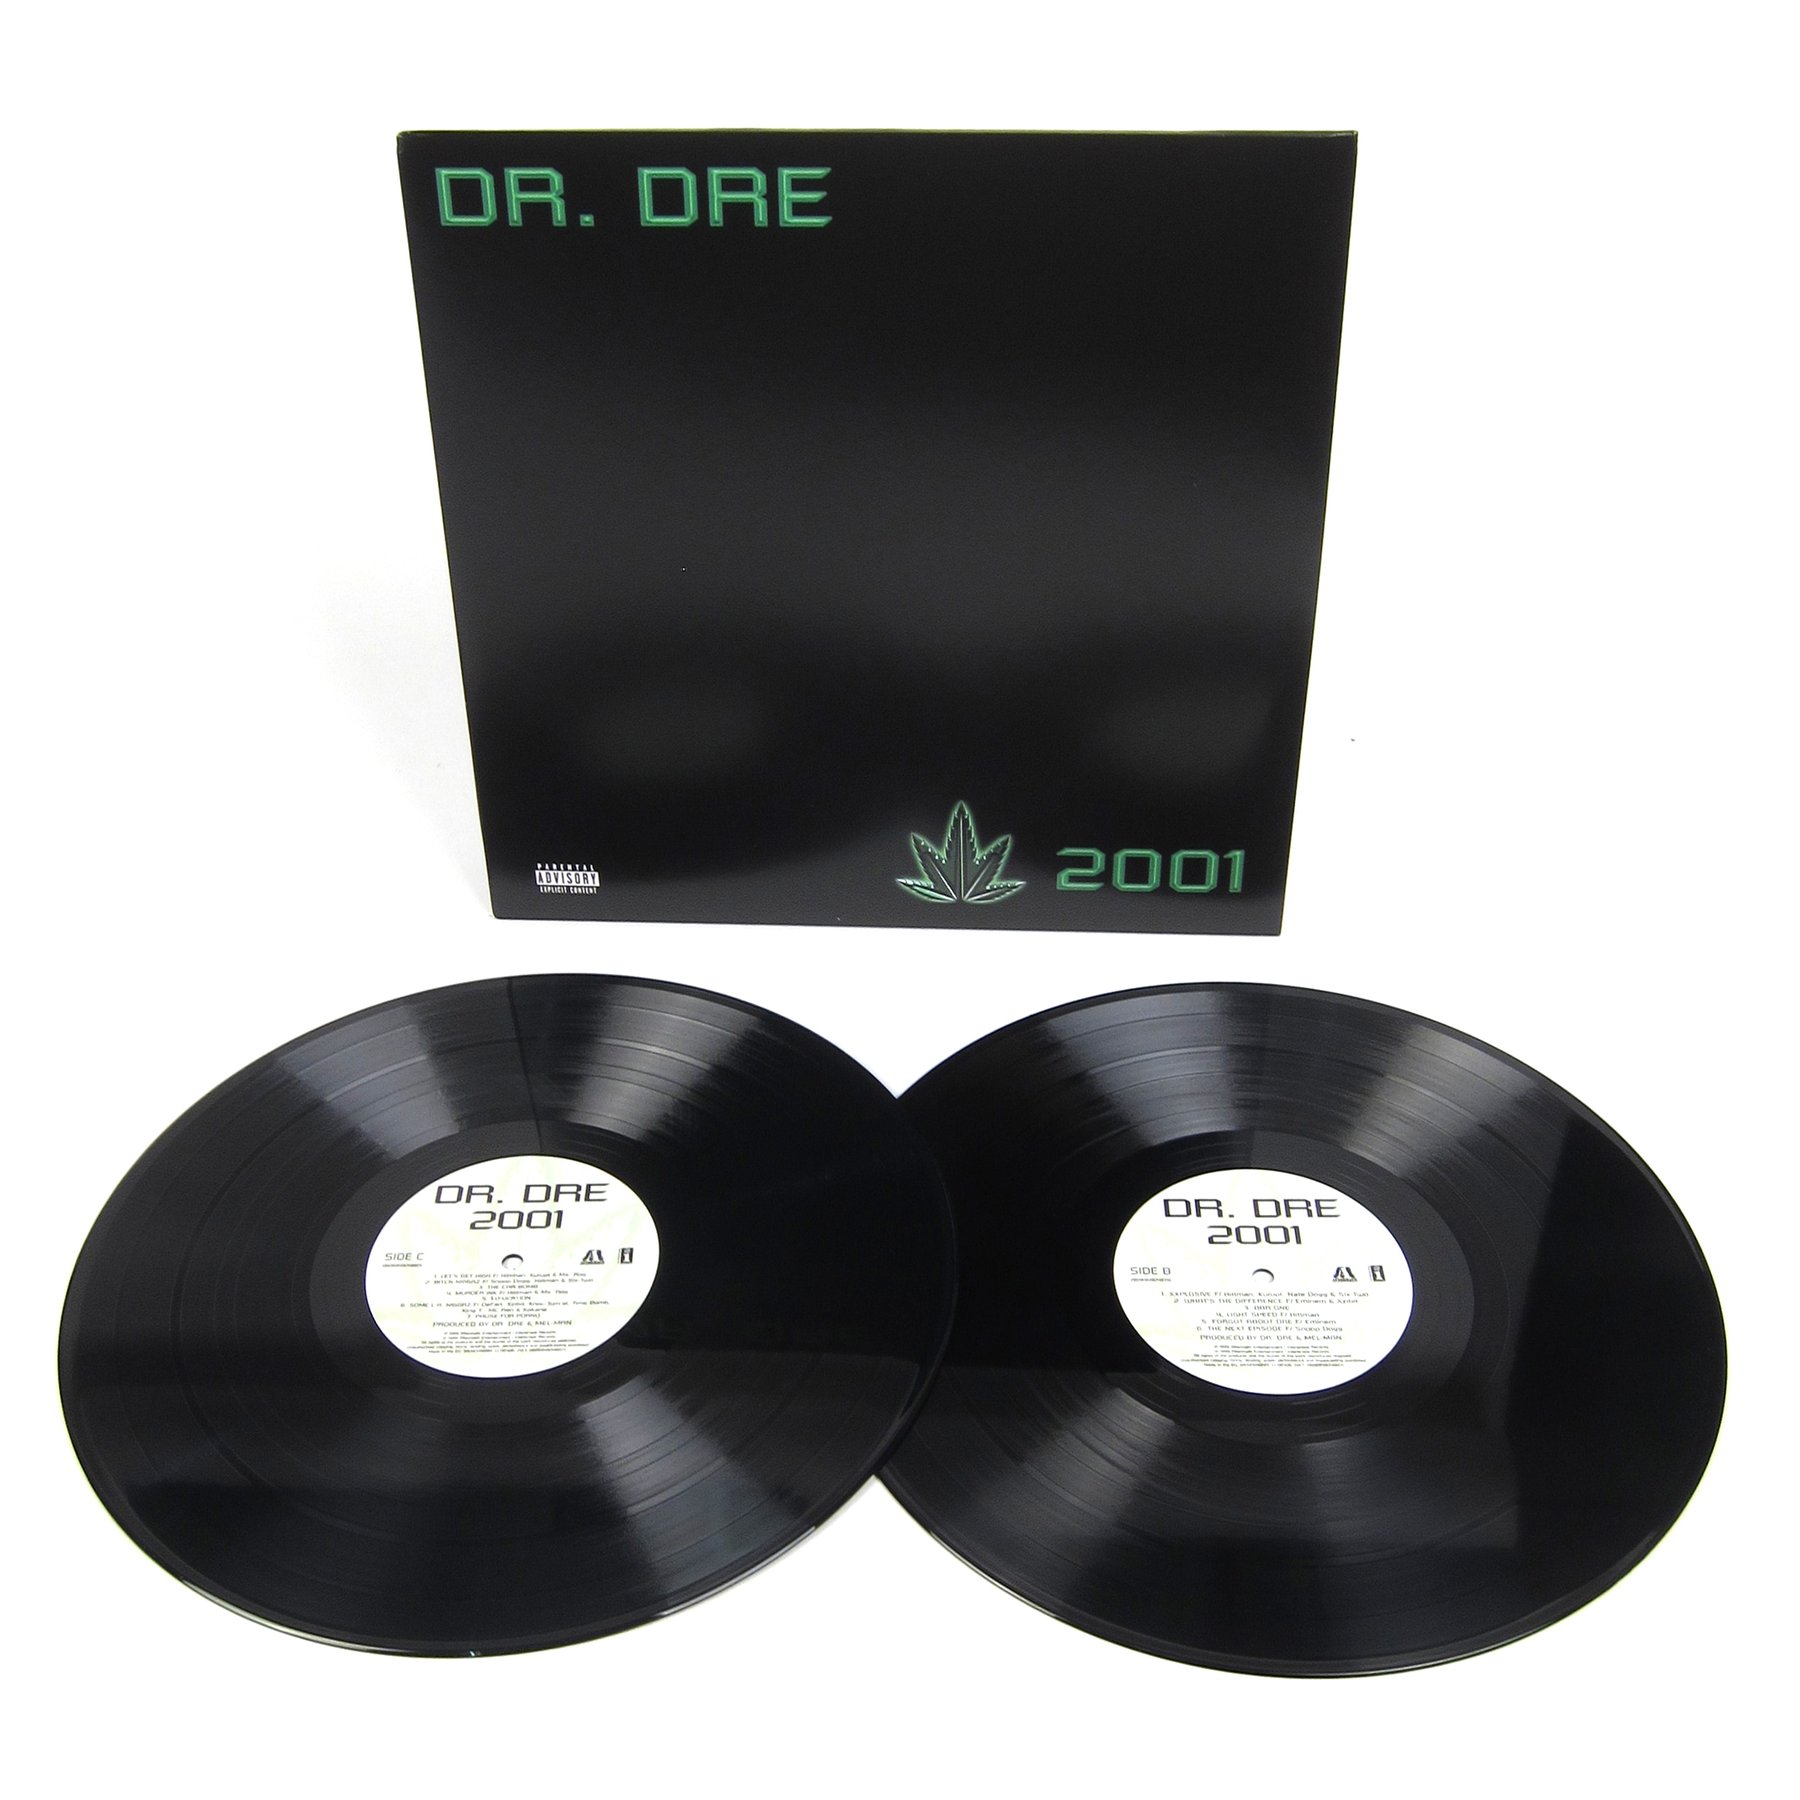 Dr Dre - 2001 (Instrumental) / Polydor UK 7779419 - Vinyl